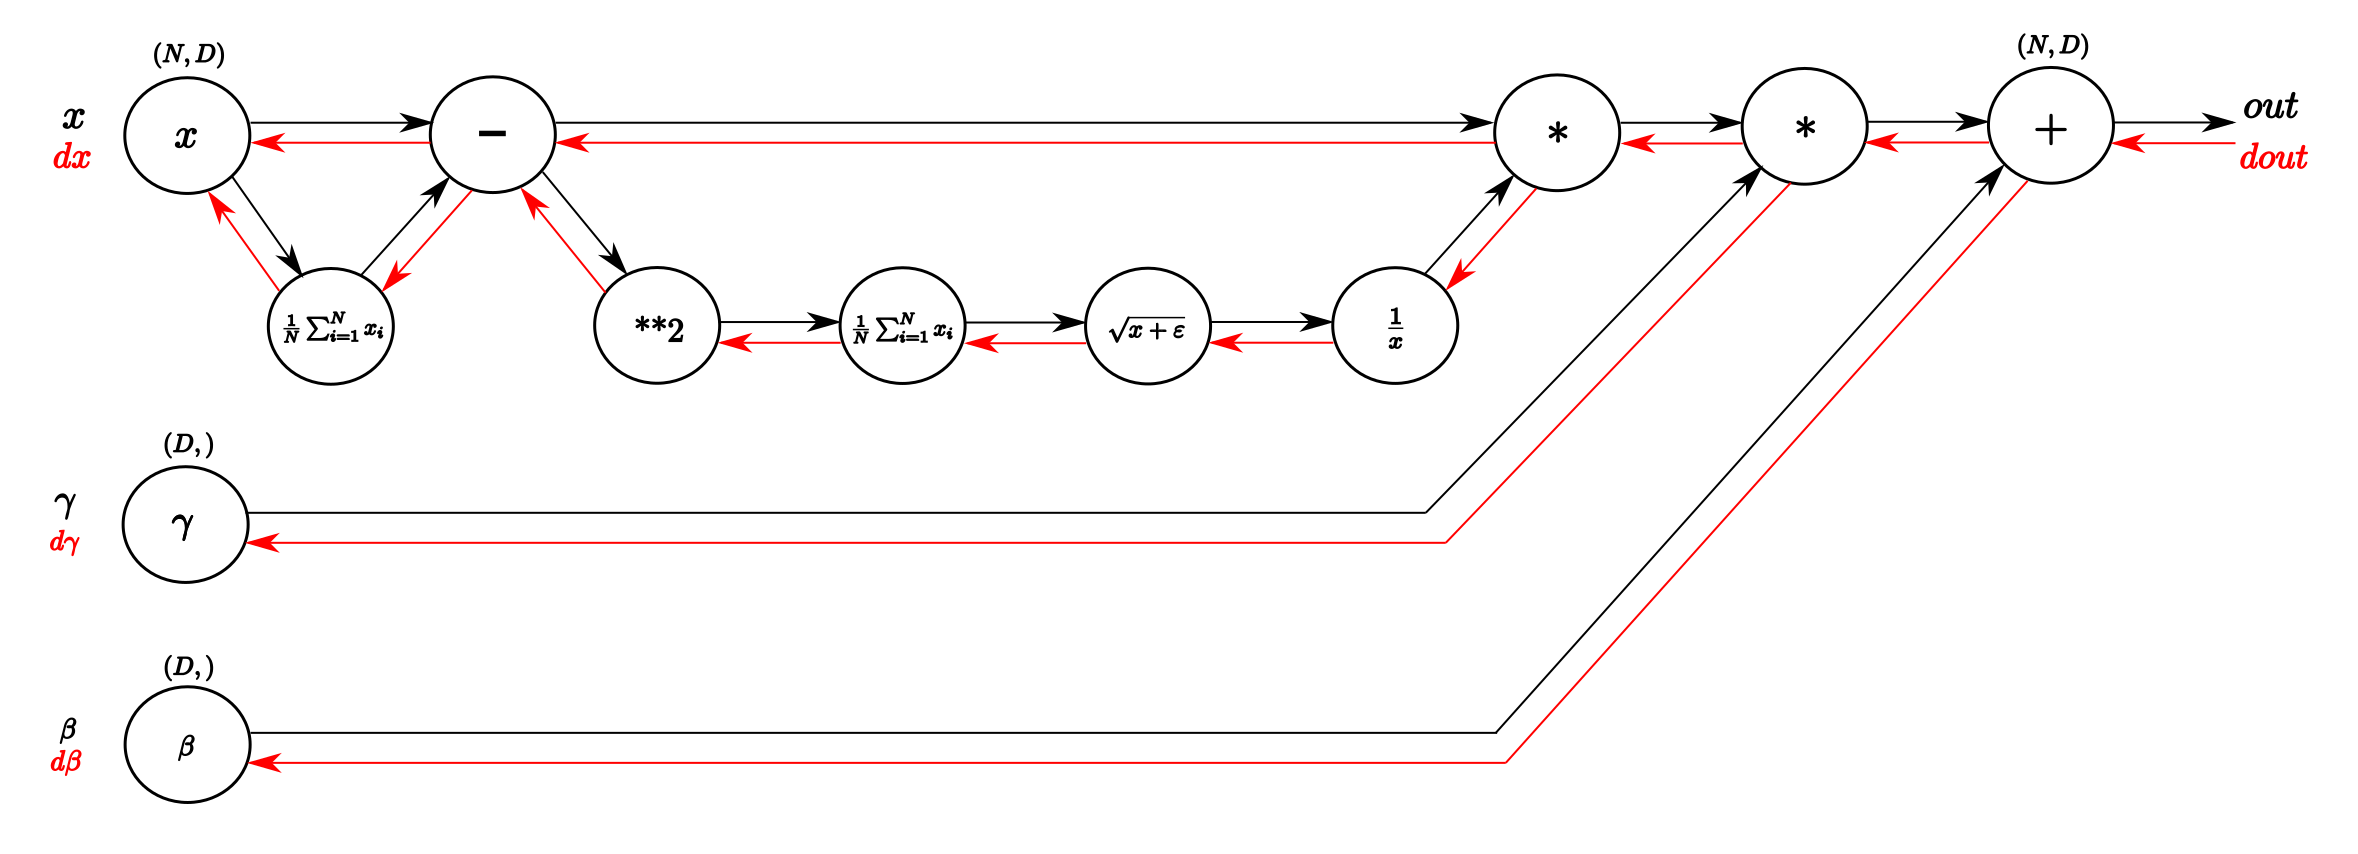 Frederik Kratzert, [Understanding the backward pass through Batch Normalization Layer](https://kratzert.github.io/2016/02/12/understanding-the-gradient-flow-through-the-batch-normalization-layer.html) (2016)